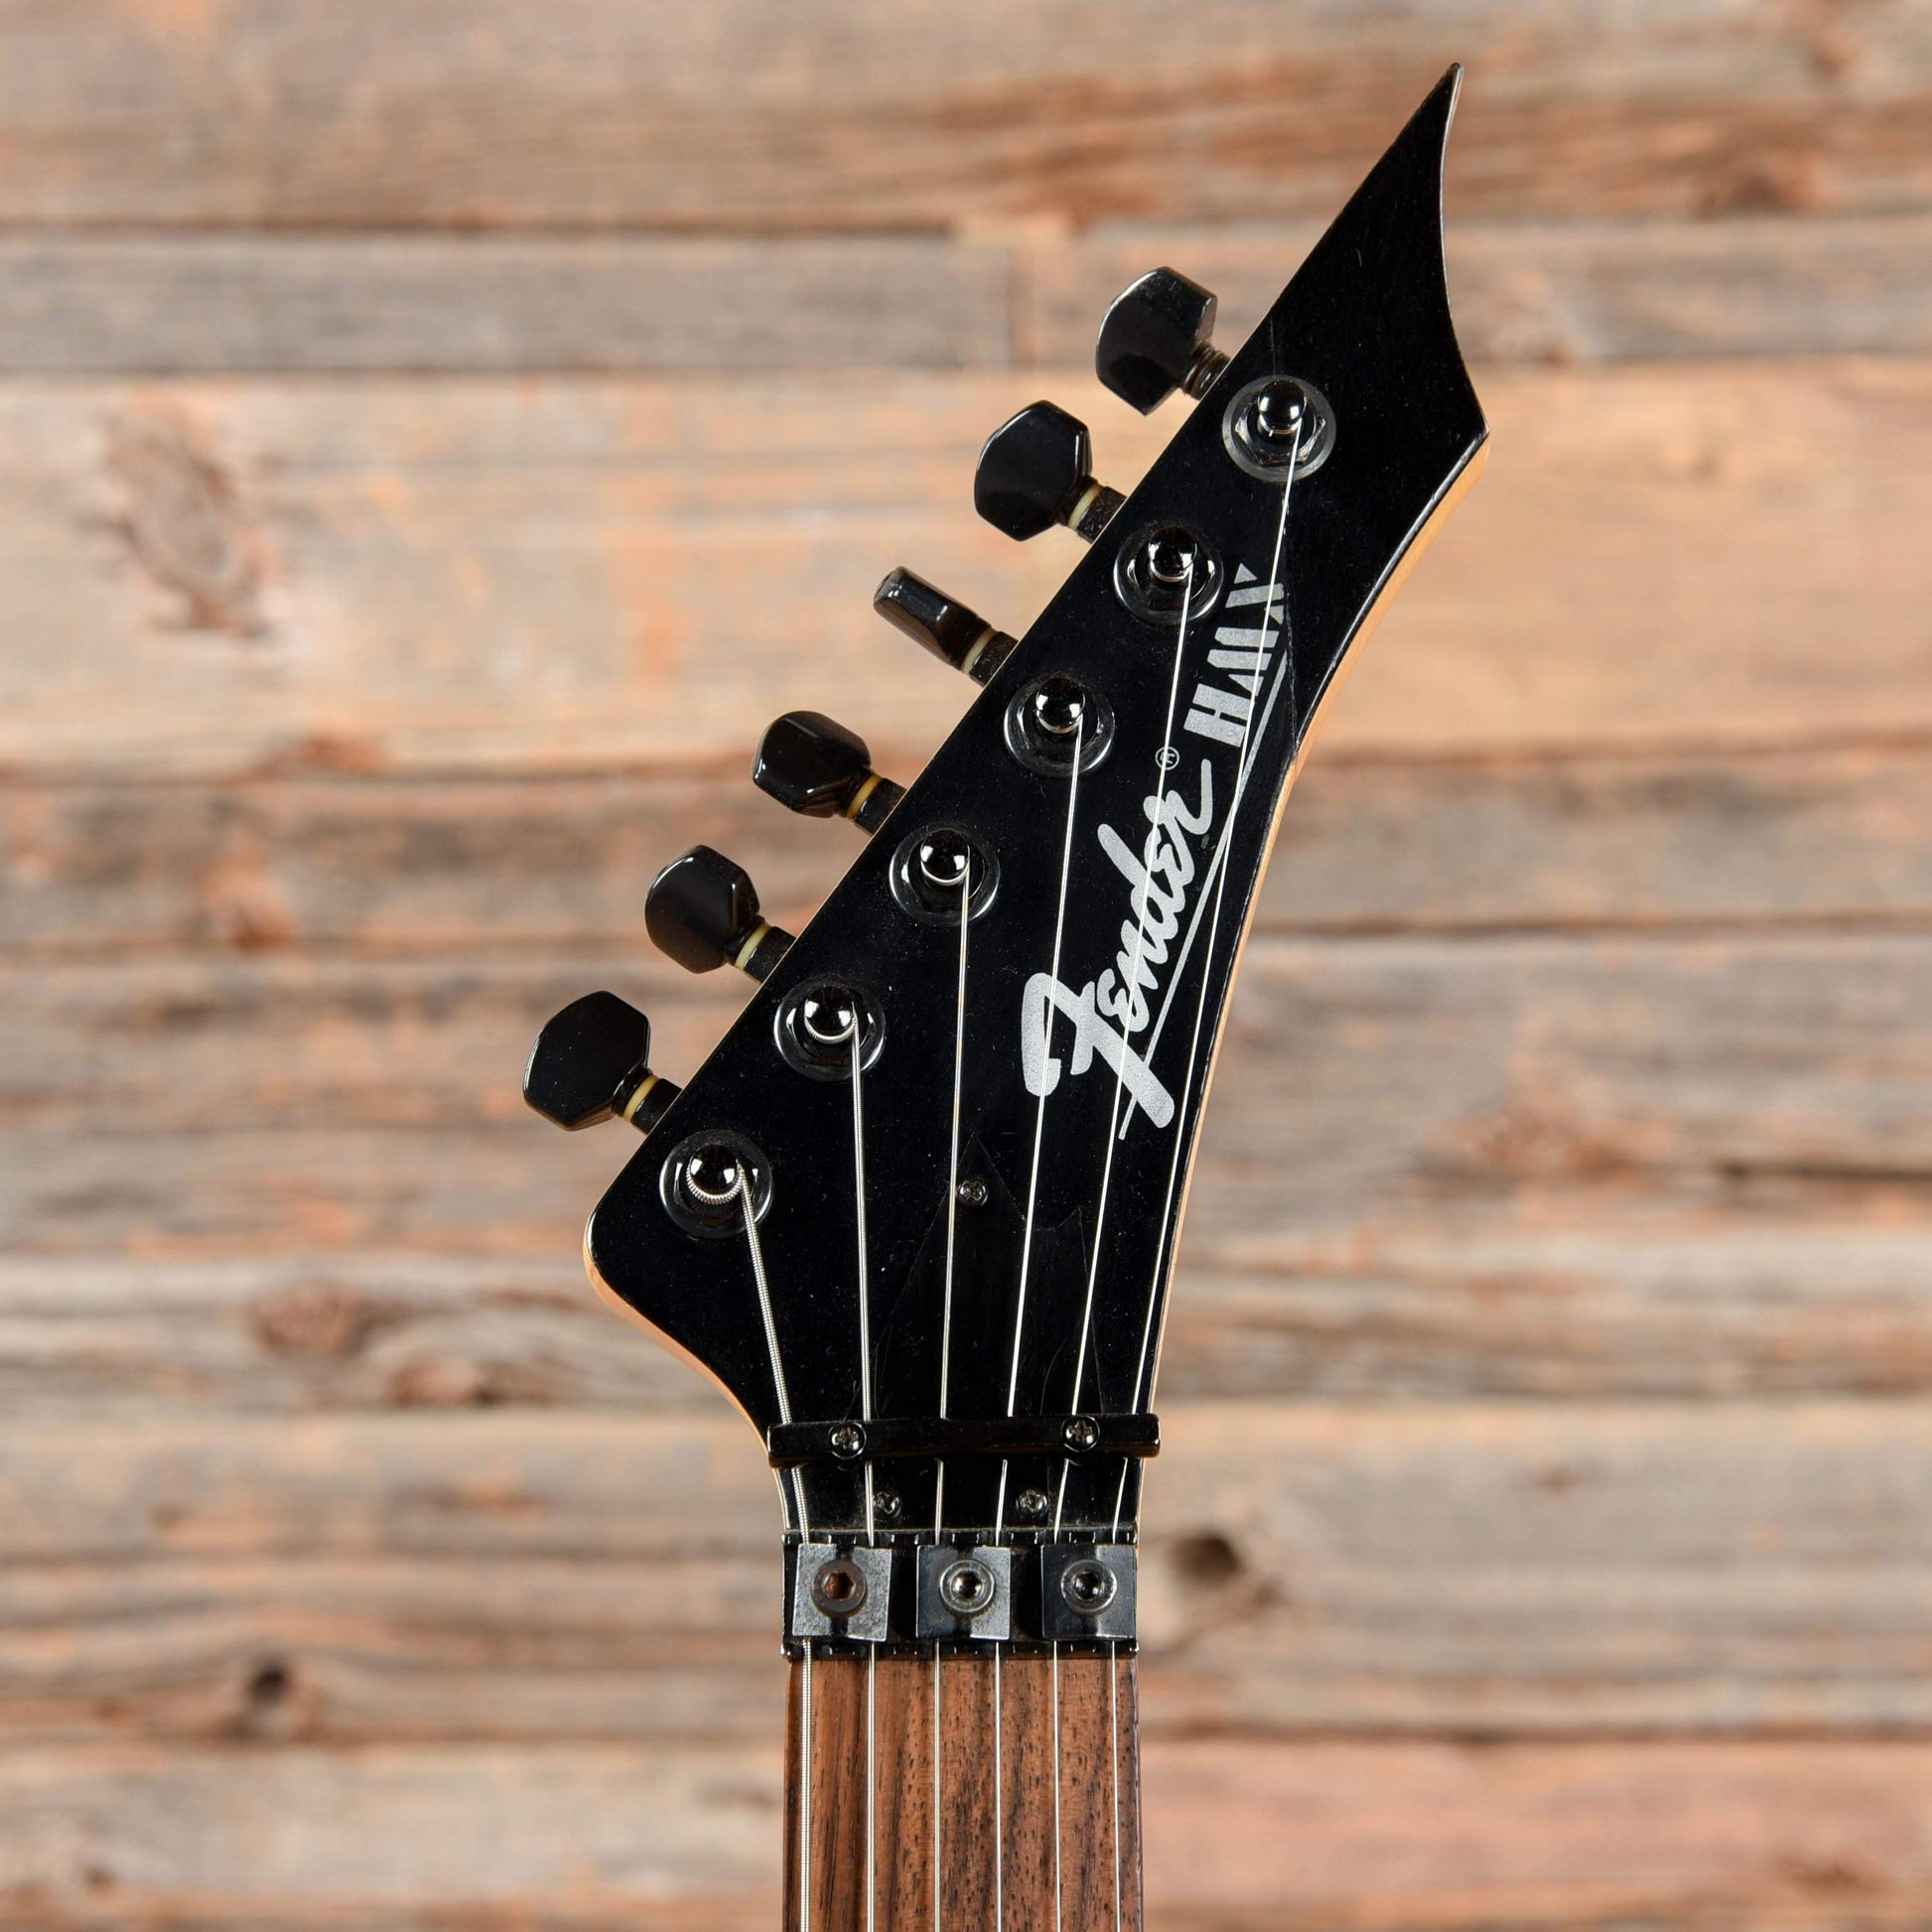 Fender Heartfield Talon White Pearl 1991 Electric Guitars / Solid Body